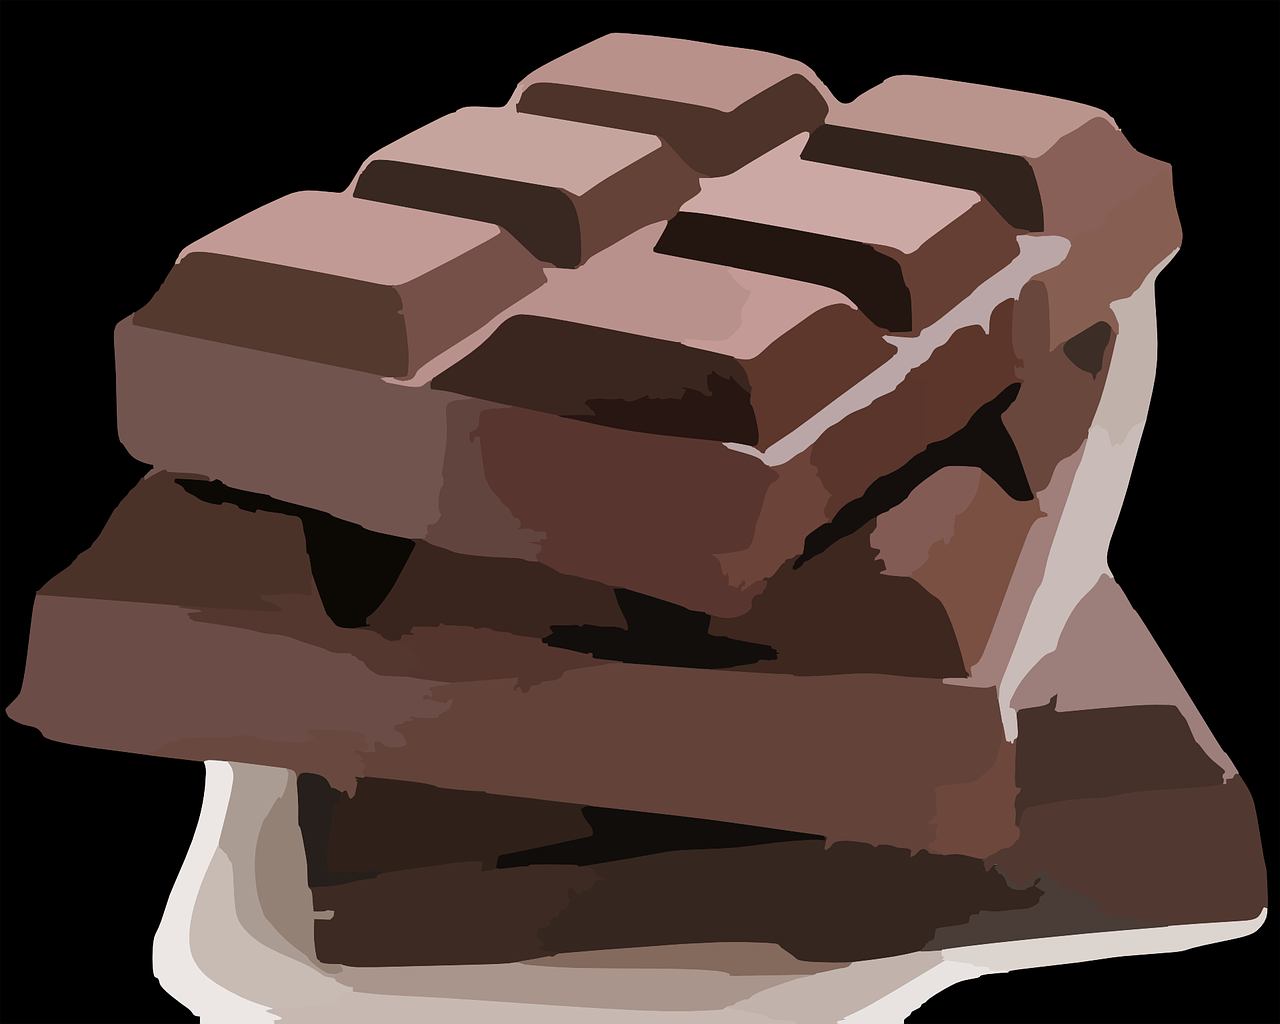 Šokolado Plytelė, Šokoladas, Saldainiai, Saldus, Maistas, Desertas, Skanus, Ruda, Tamsi, Užkandis